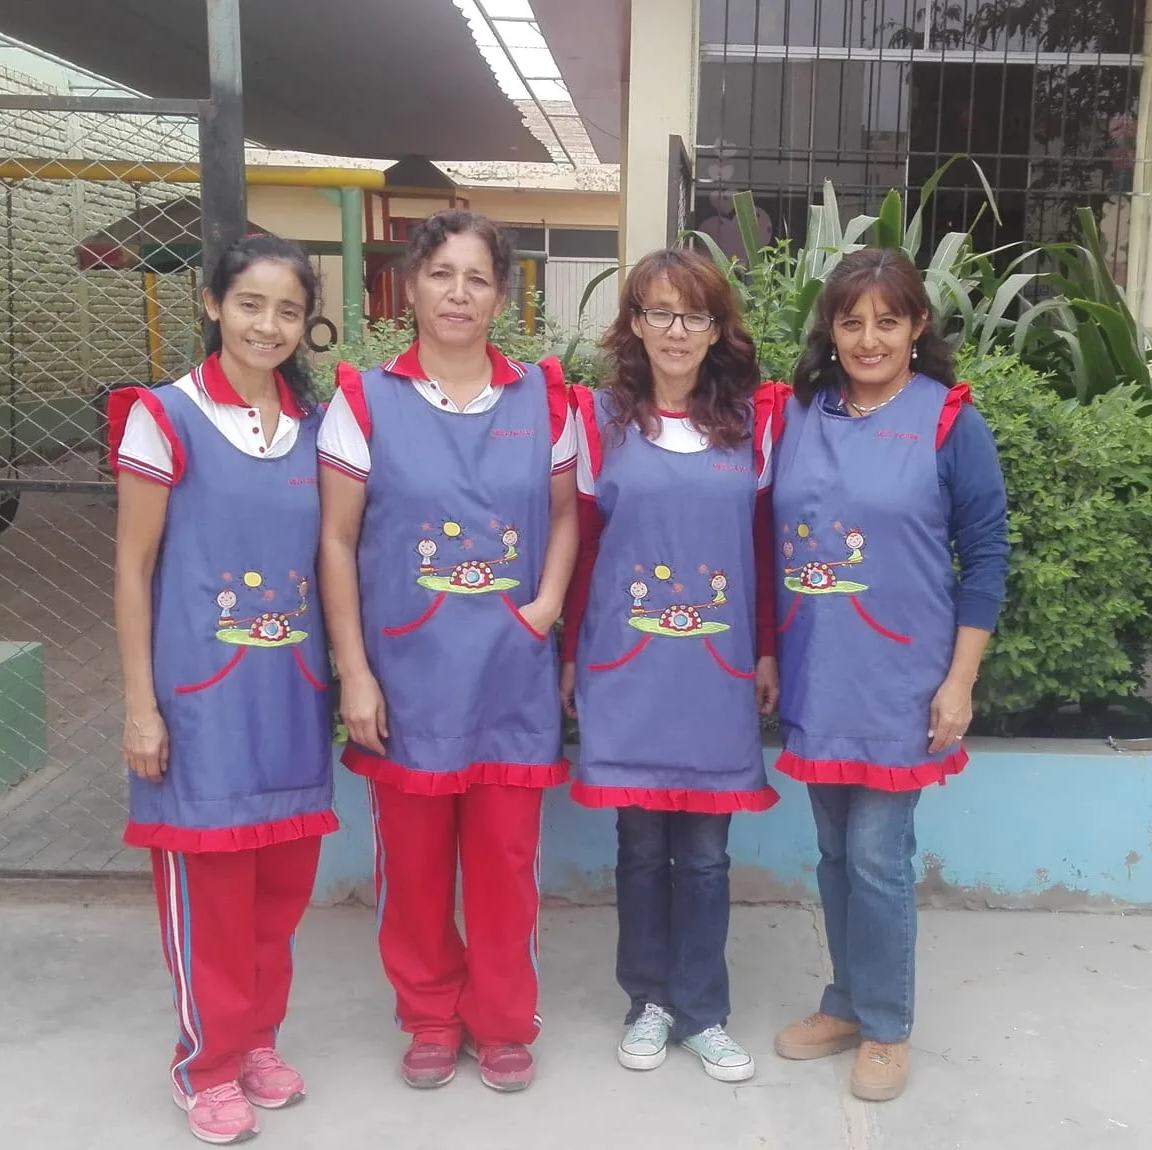 Uniformes para maestras - Prendas - - Arreglos de ropa | Chiclayo